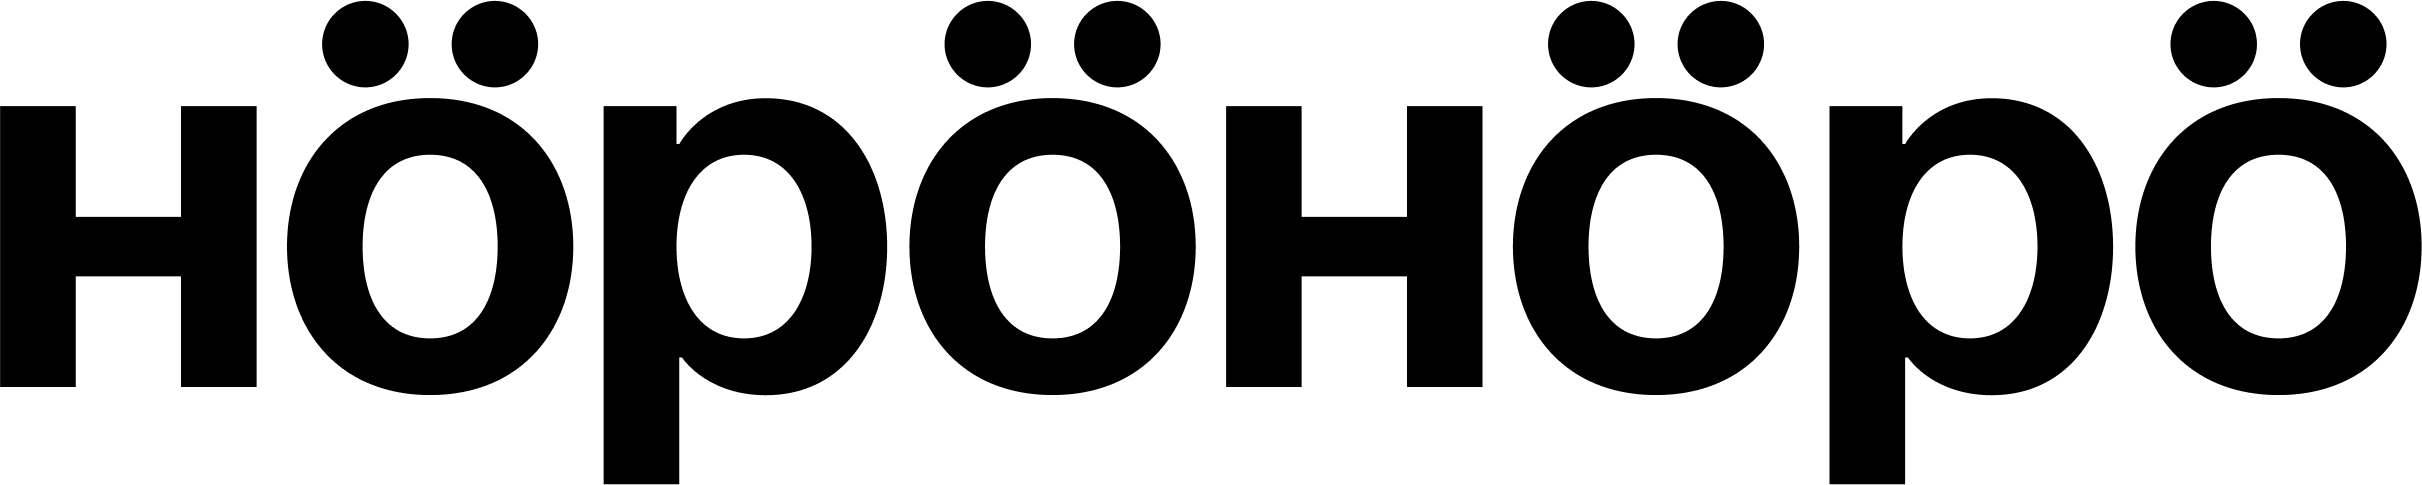 Höpöhöpö_logo_black